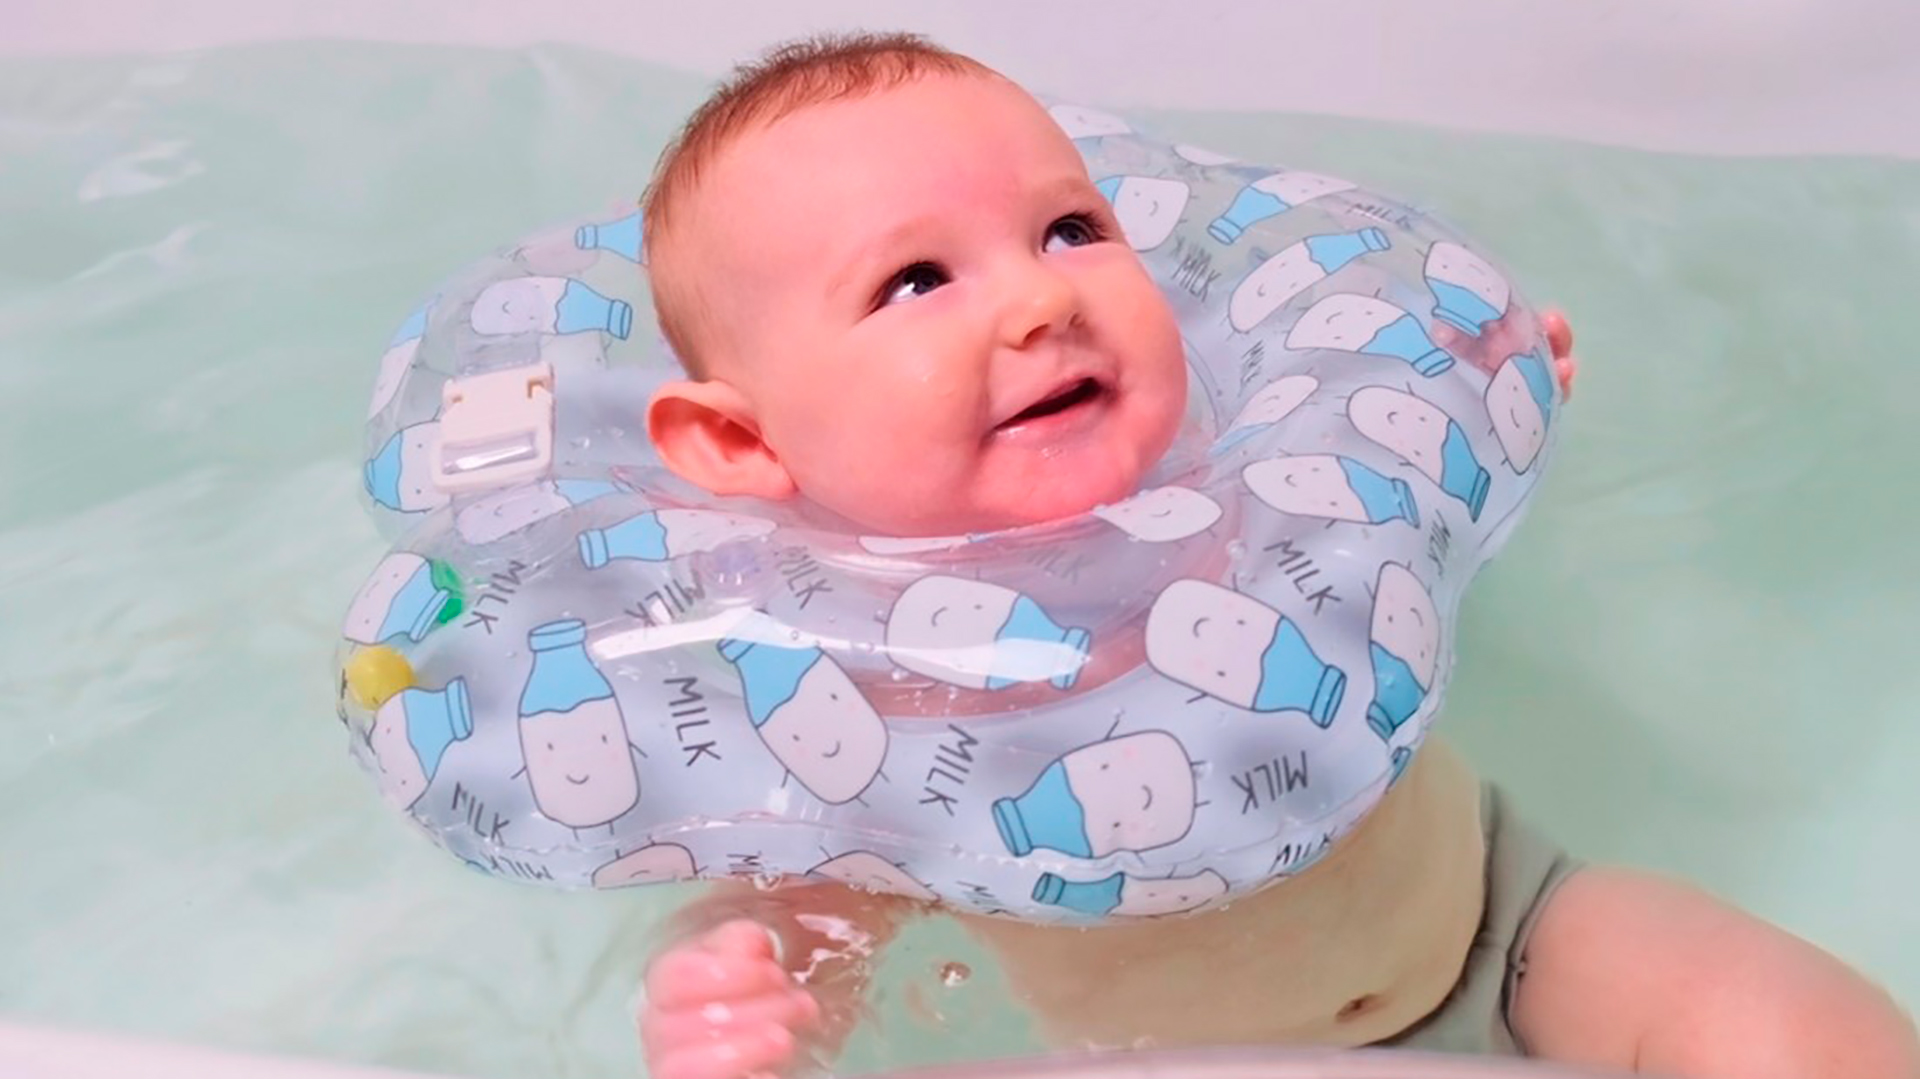 La FDA alertó sobre el riesgo de muerte o lesión en bebés por el uso de flotadores de cuello para agua